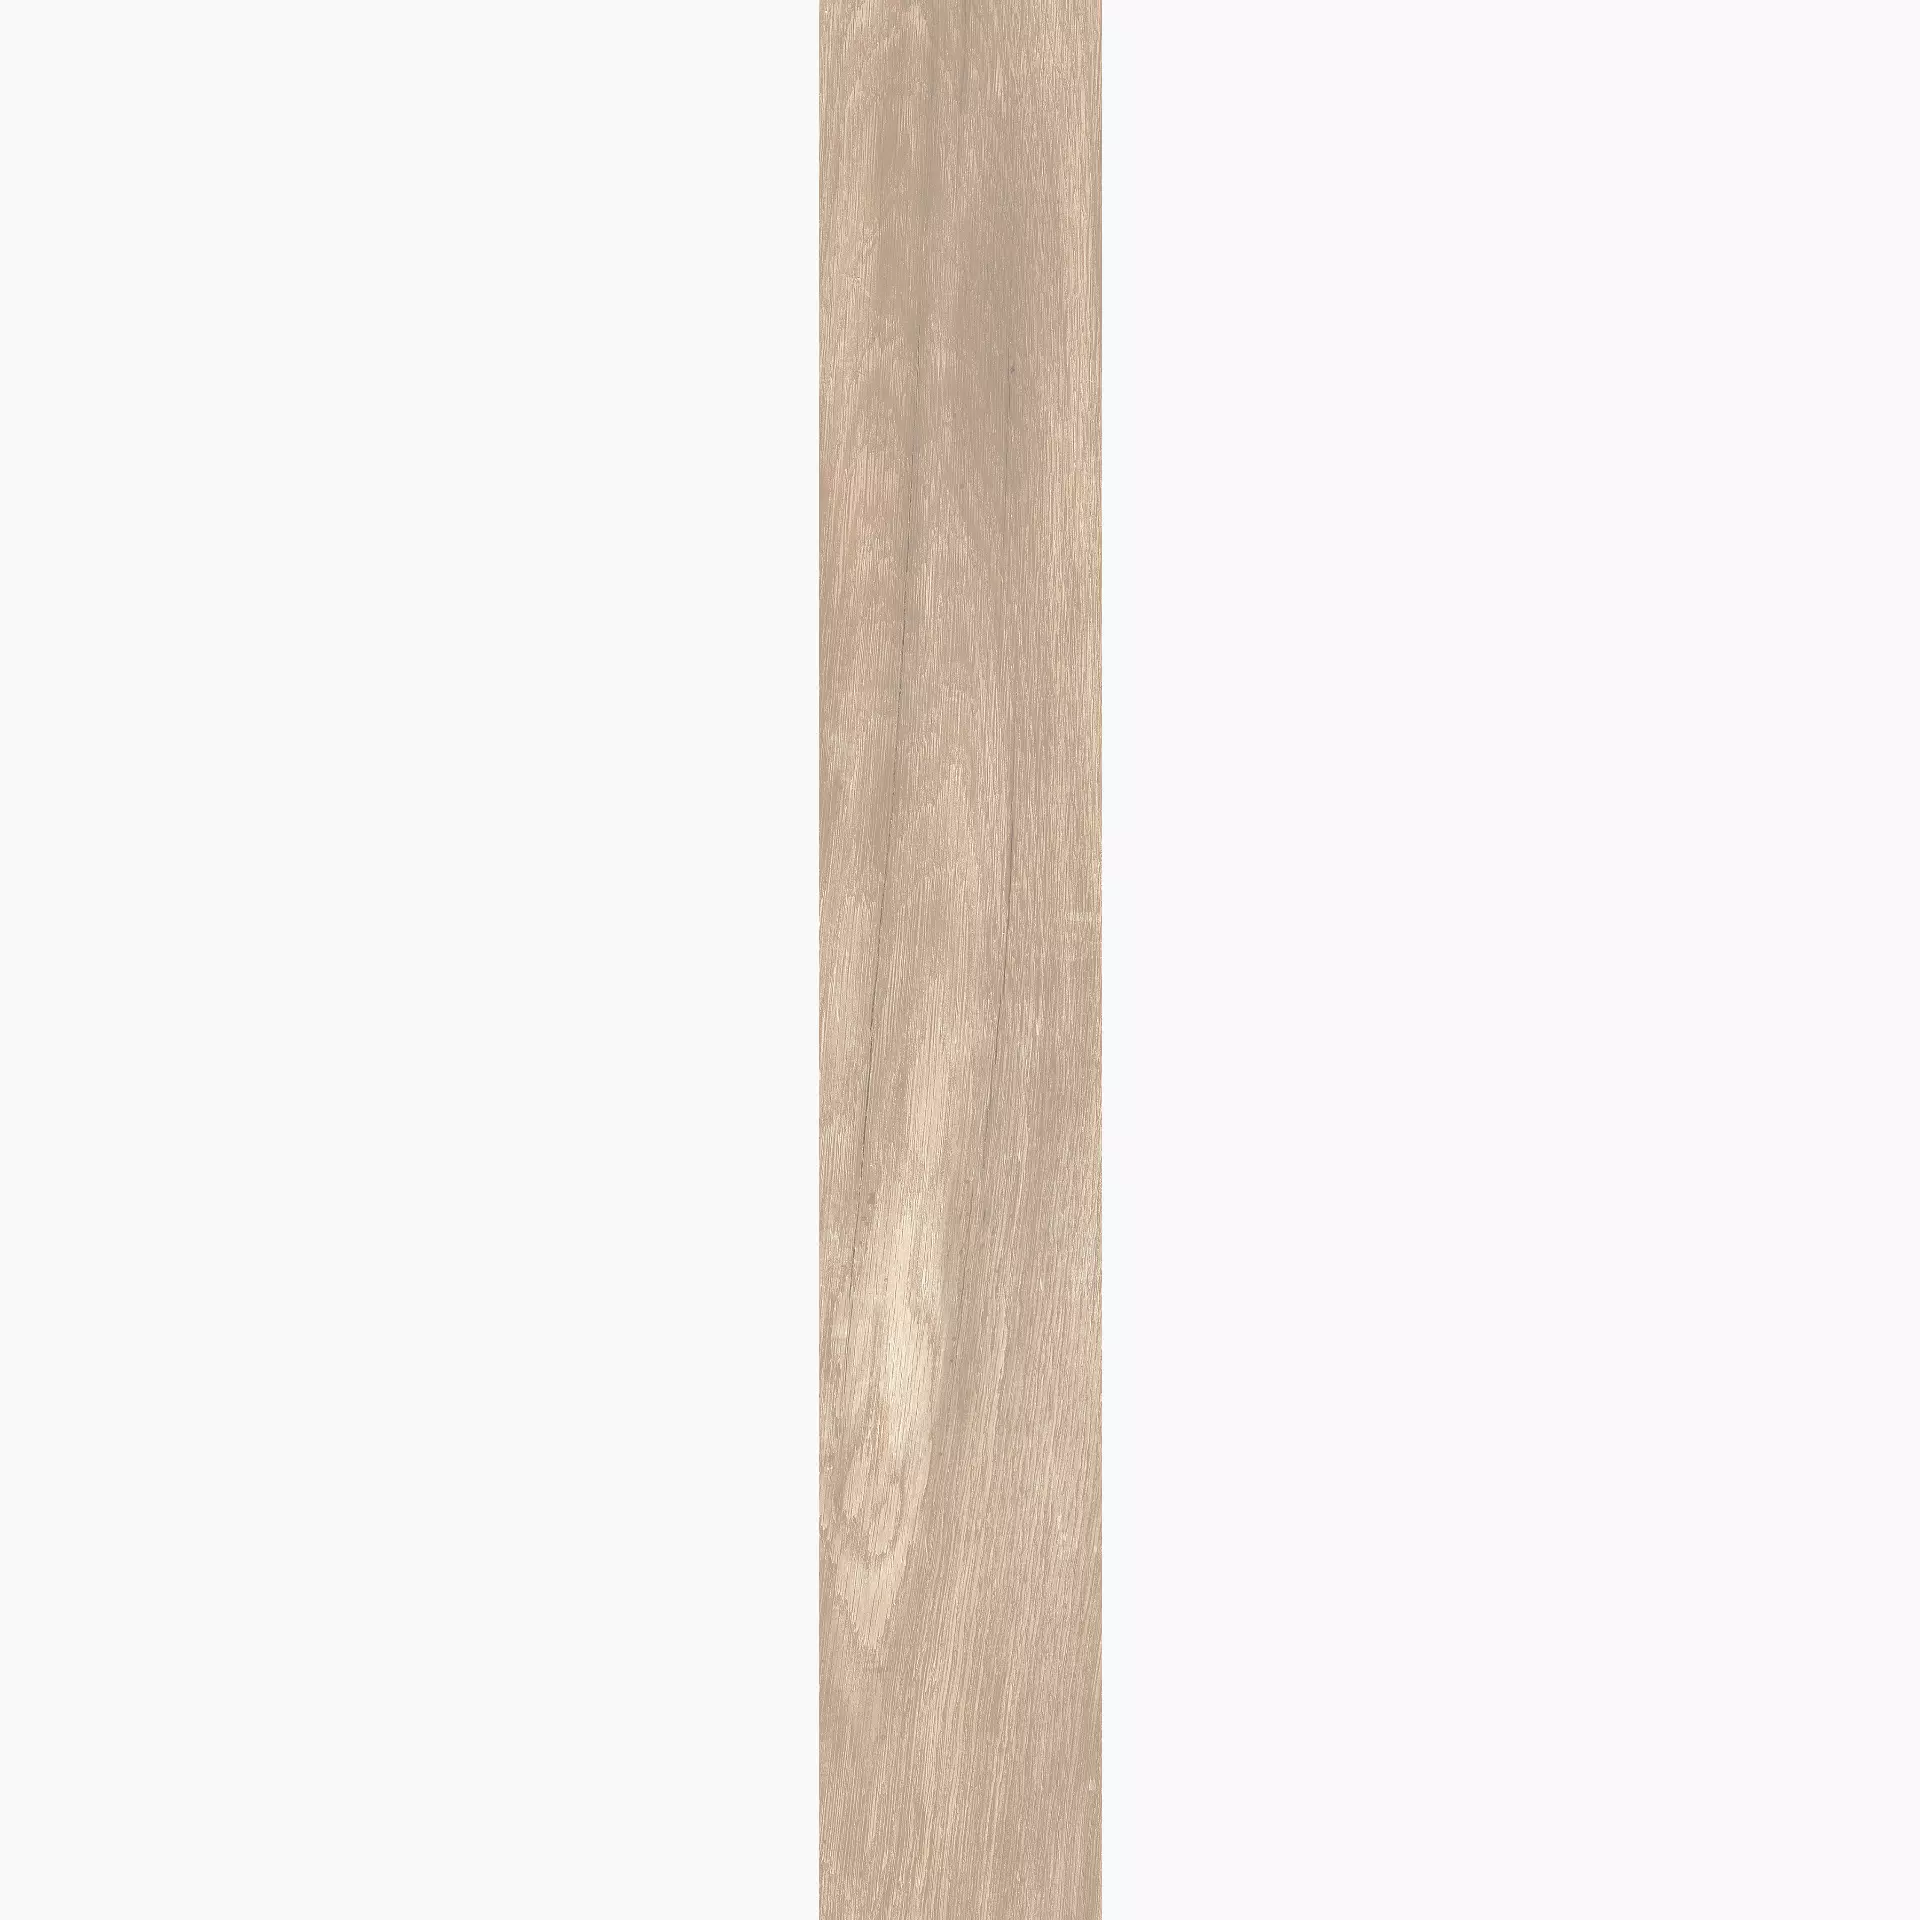 KRONOS Woodside Oak Grip Oak 8054 grip 26,5x180cm rektifiziert 20mm